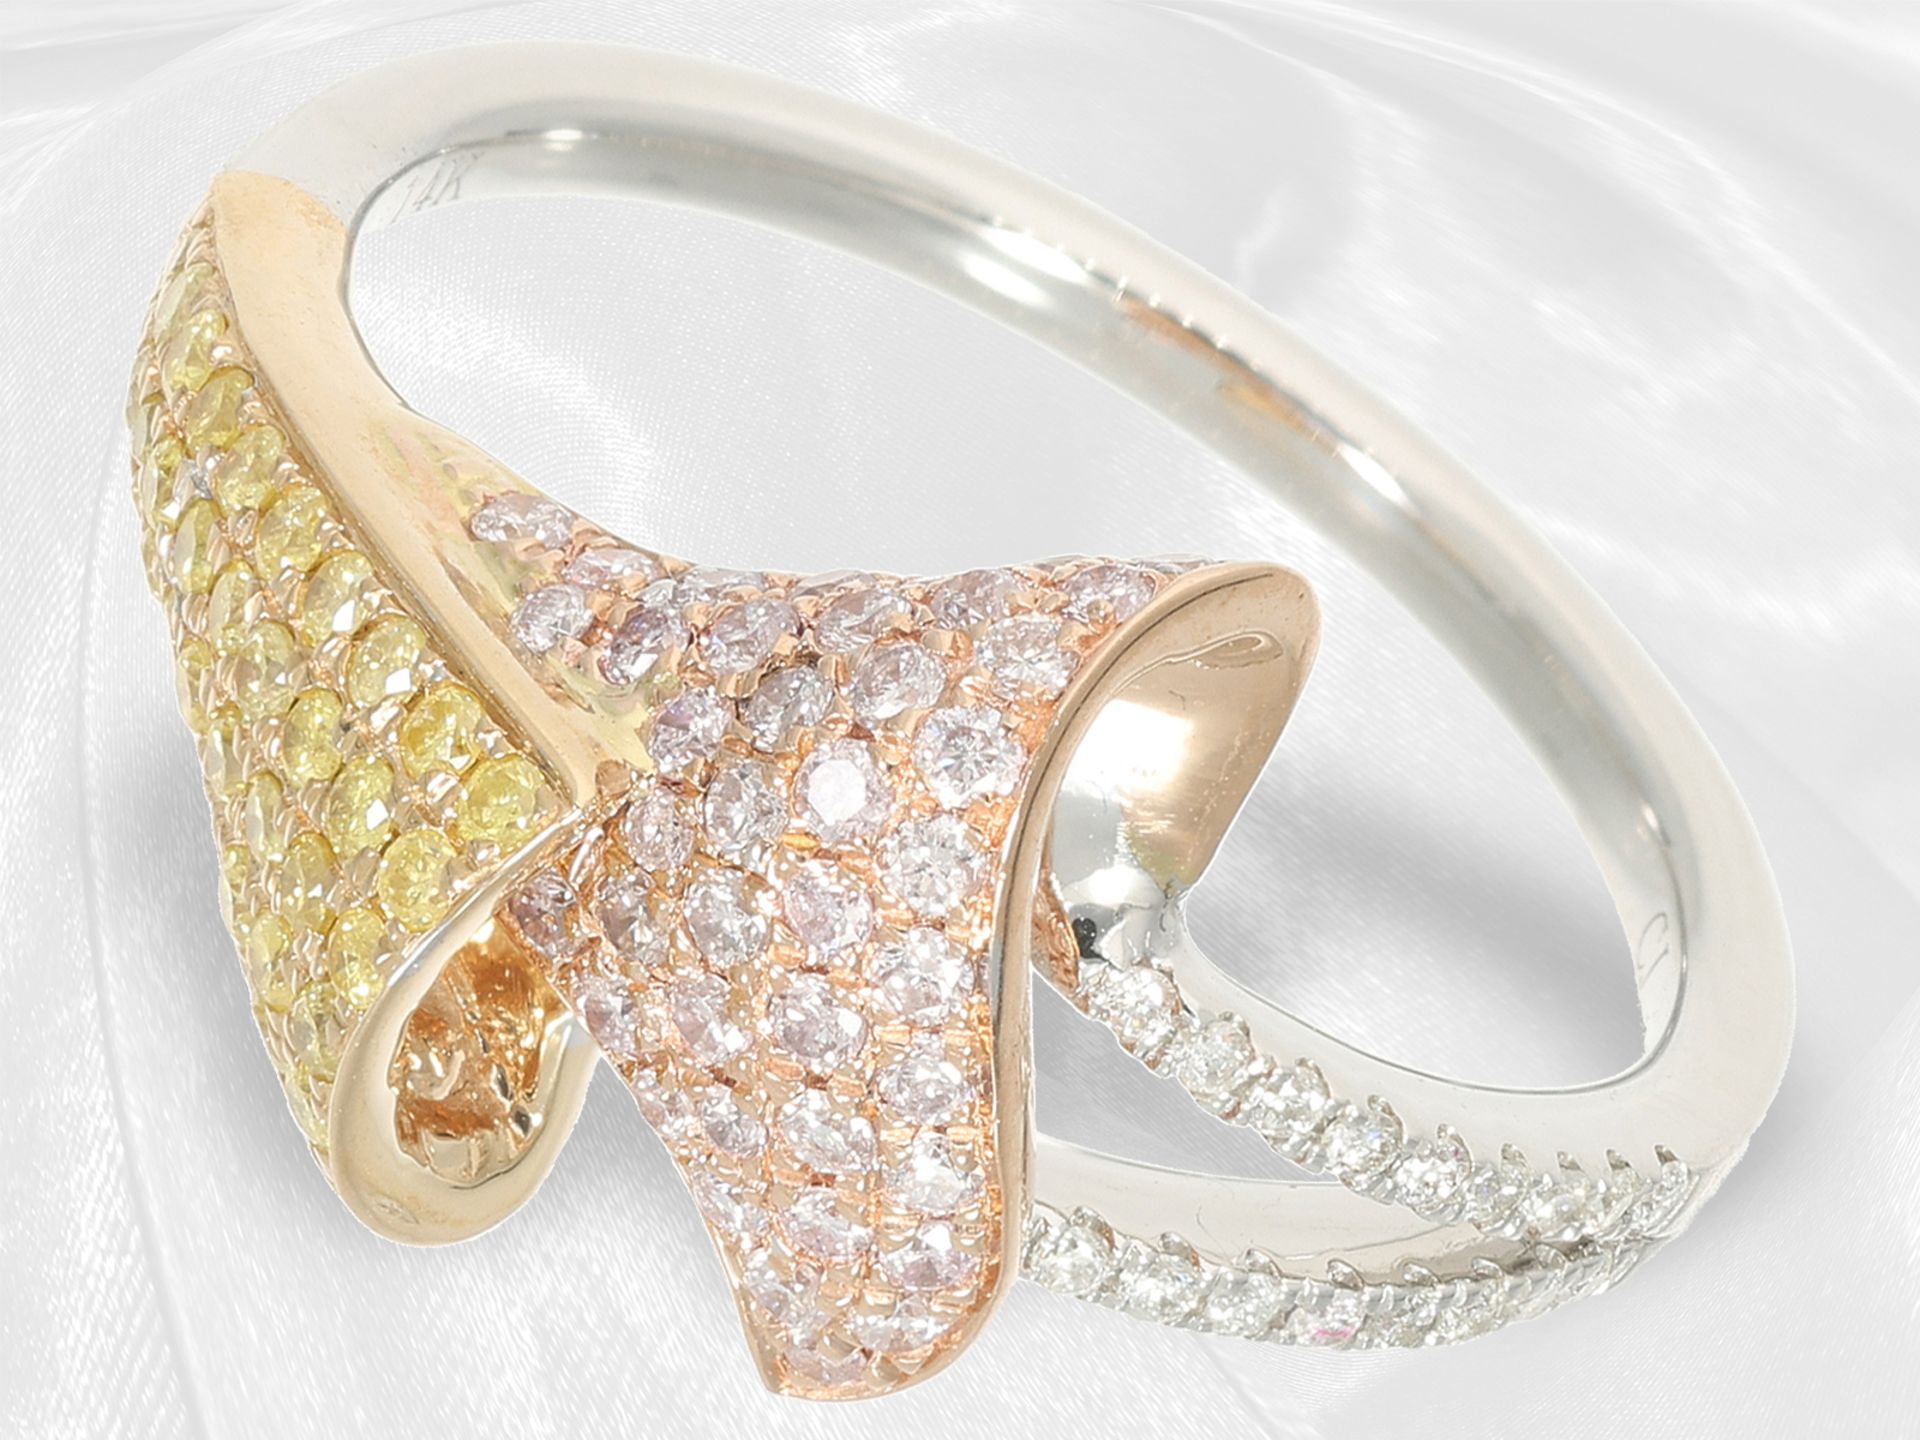 Ring: neuwertiger eleganter Tricolor-Brillantring, weiße, gelbe und pinke Brillanten